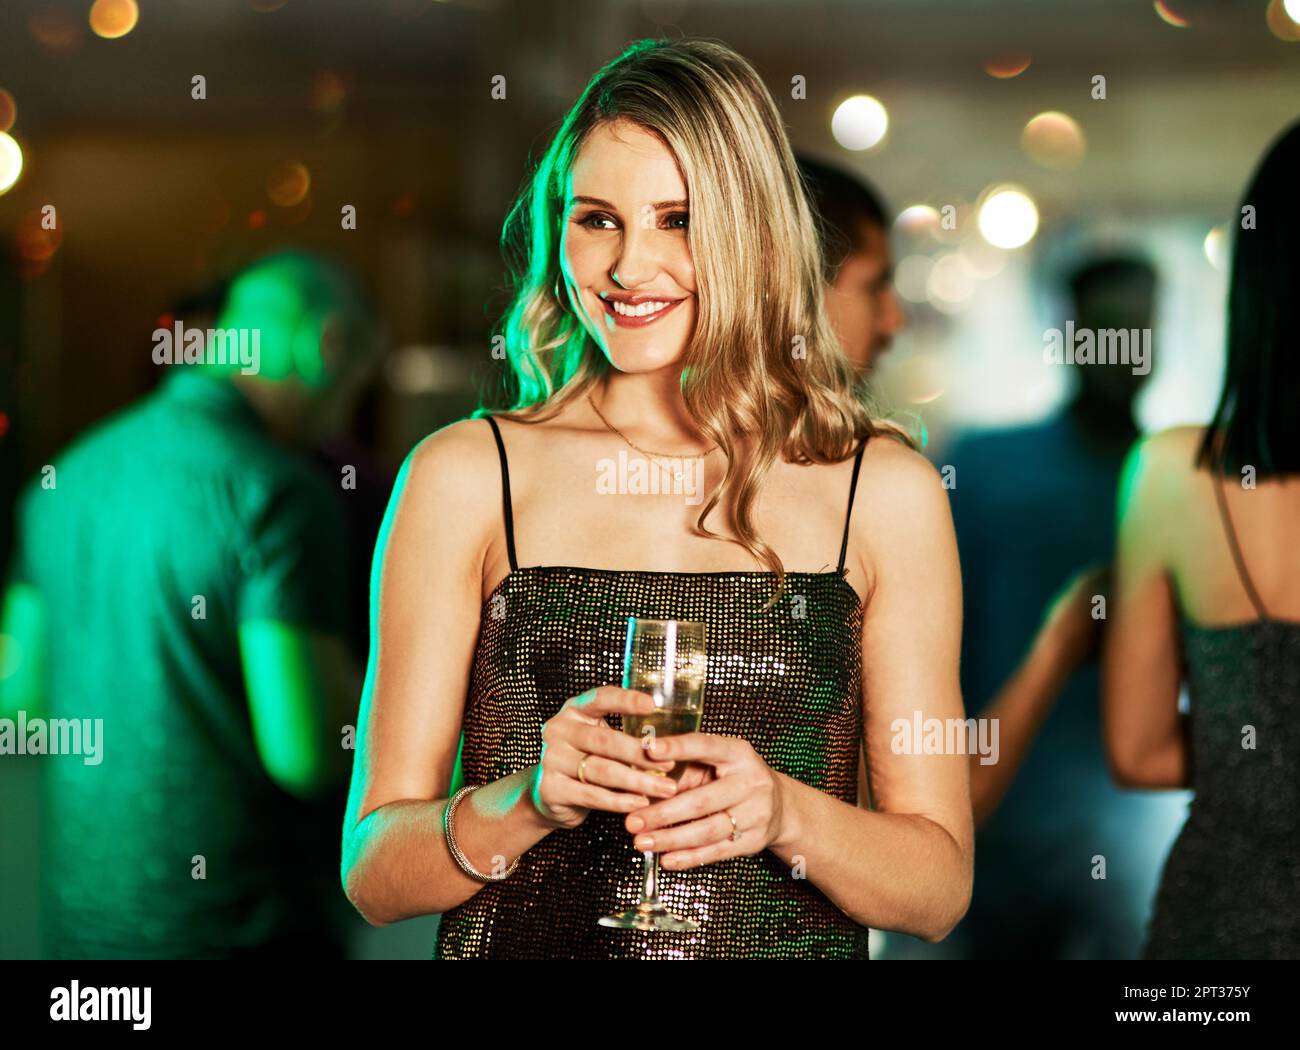 Ich warte auf diesen besonderen Menschen. Eine attraktive junge Frau, die mitten auf der Tanzfläche steht, während sie nachts in einem Club einen Drink hält Stockfoto